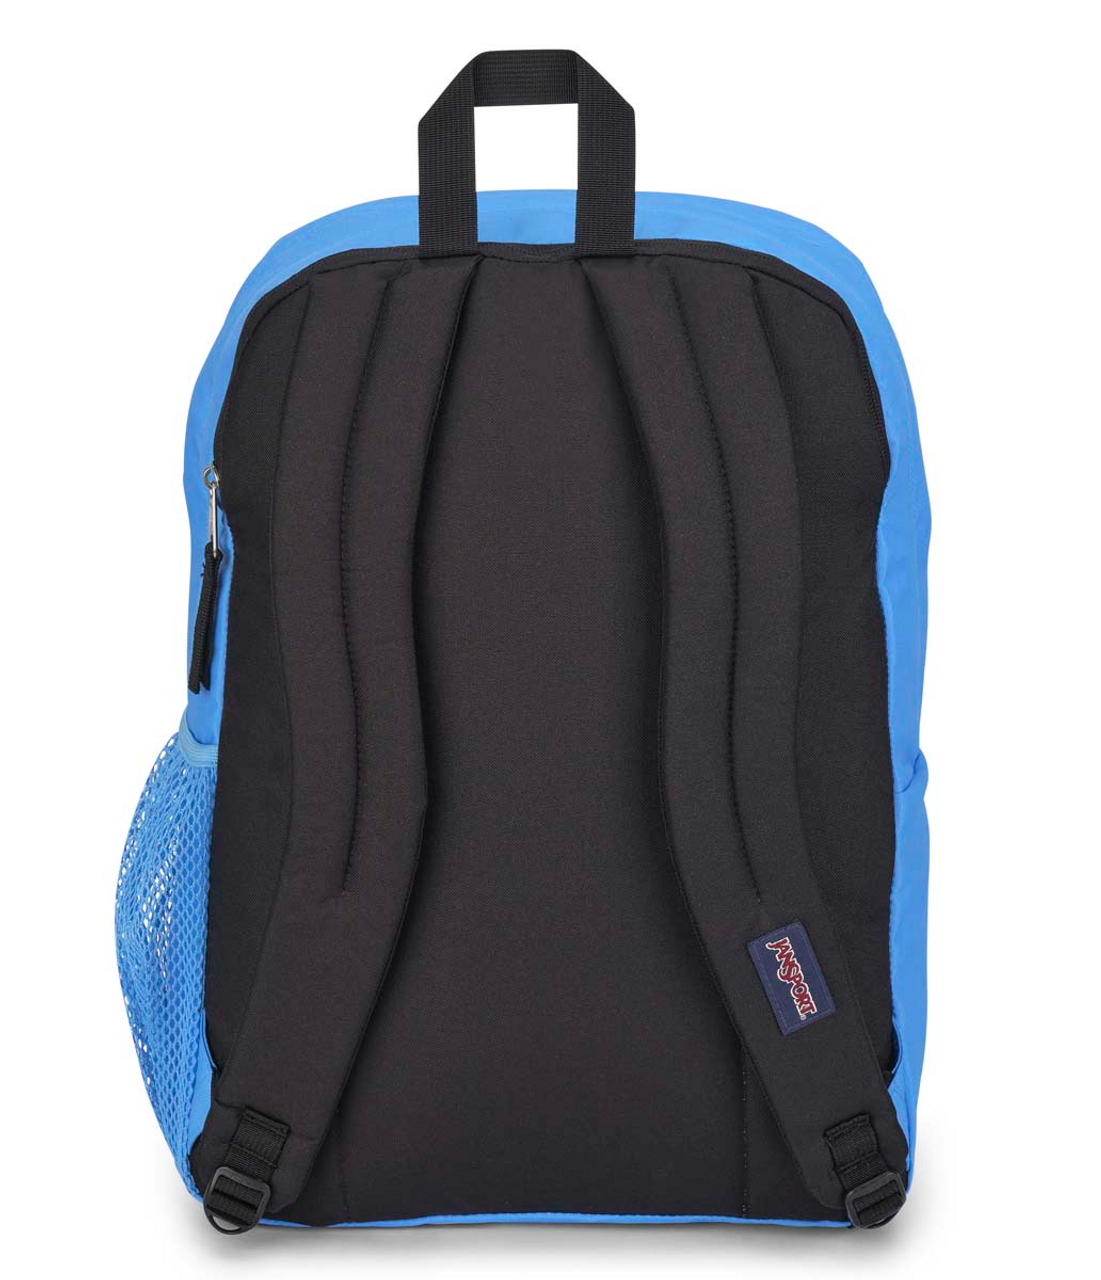 Big Student Backpack - Blue Outdoor Neon - Ramsey